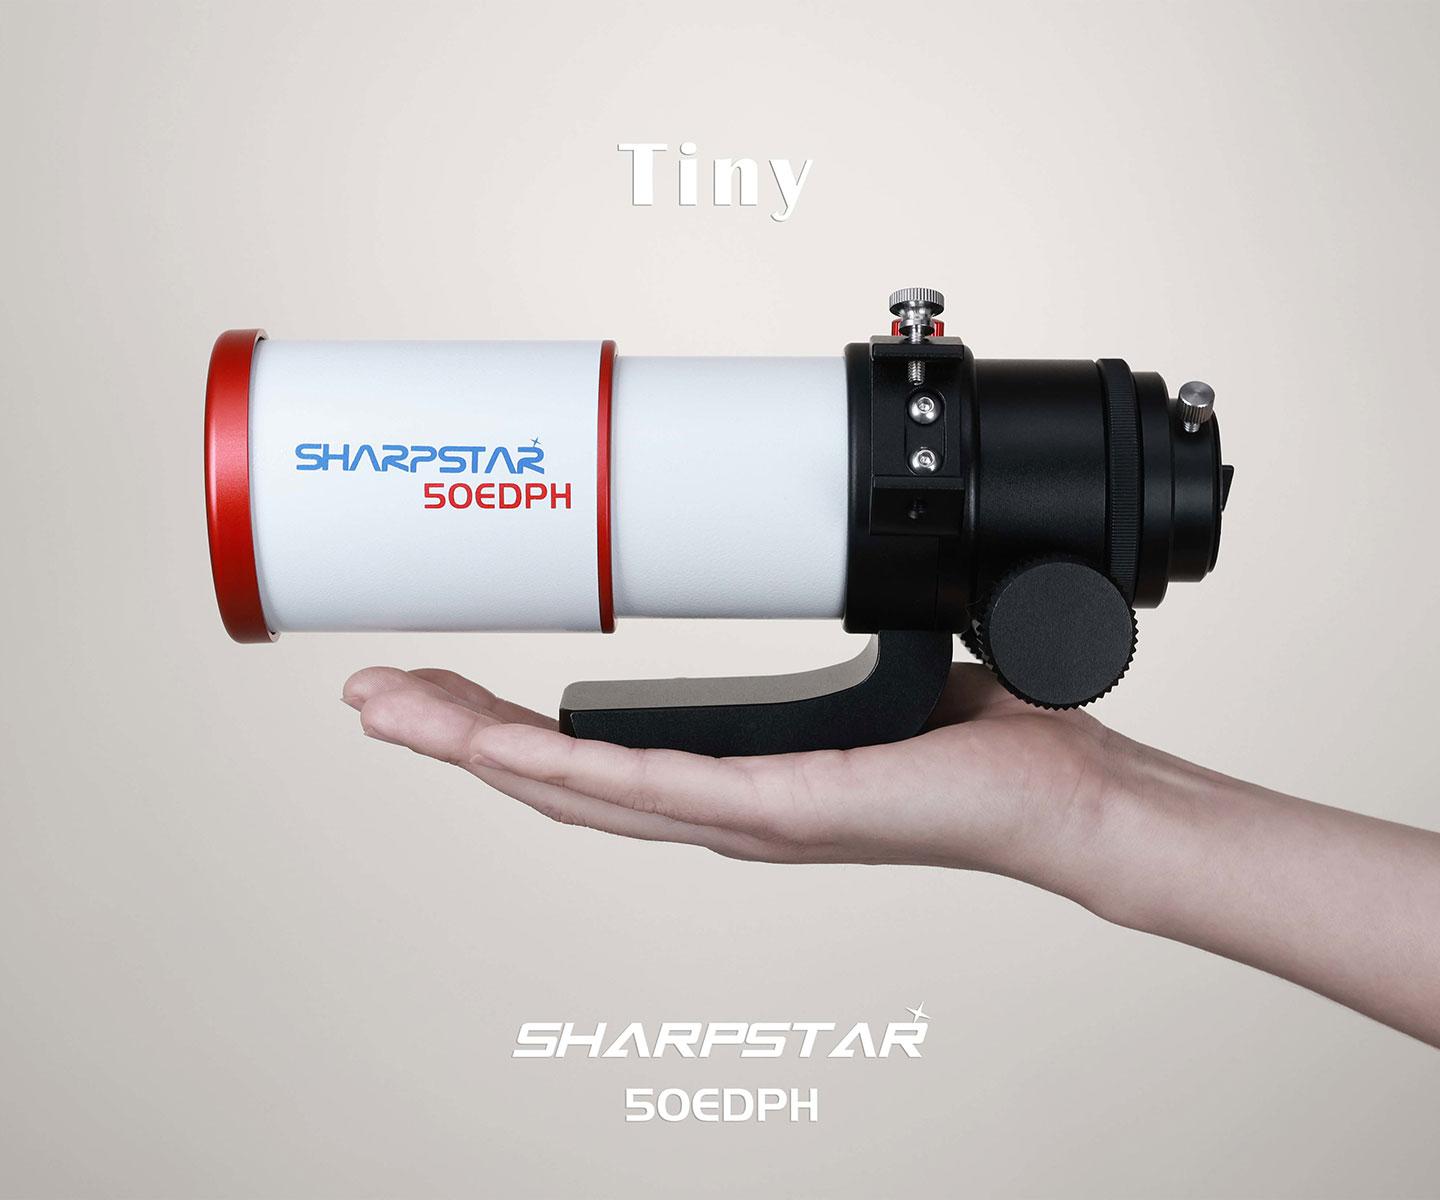  Sharpstar 50EDPH 50 mm f/5.5 Triplet Apo with 2 inch RAP focuser [EN] 